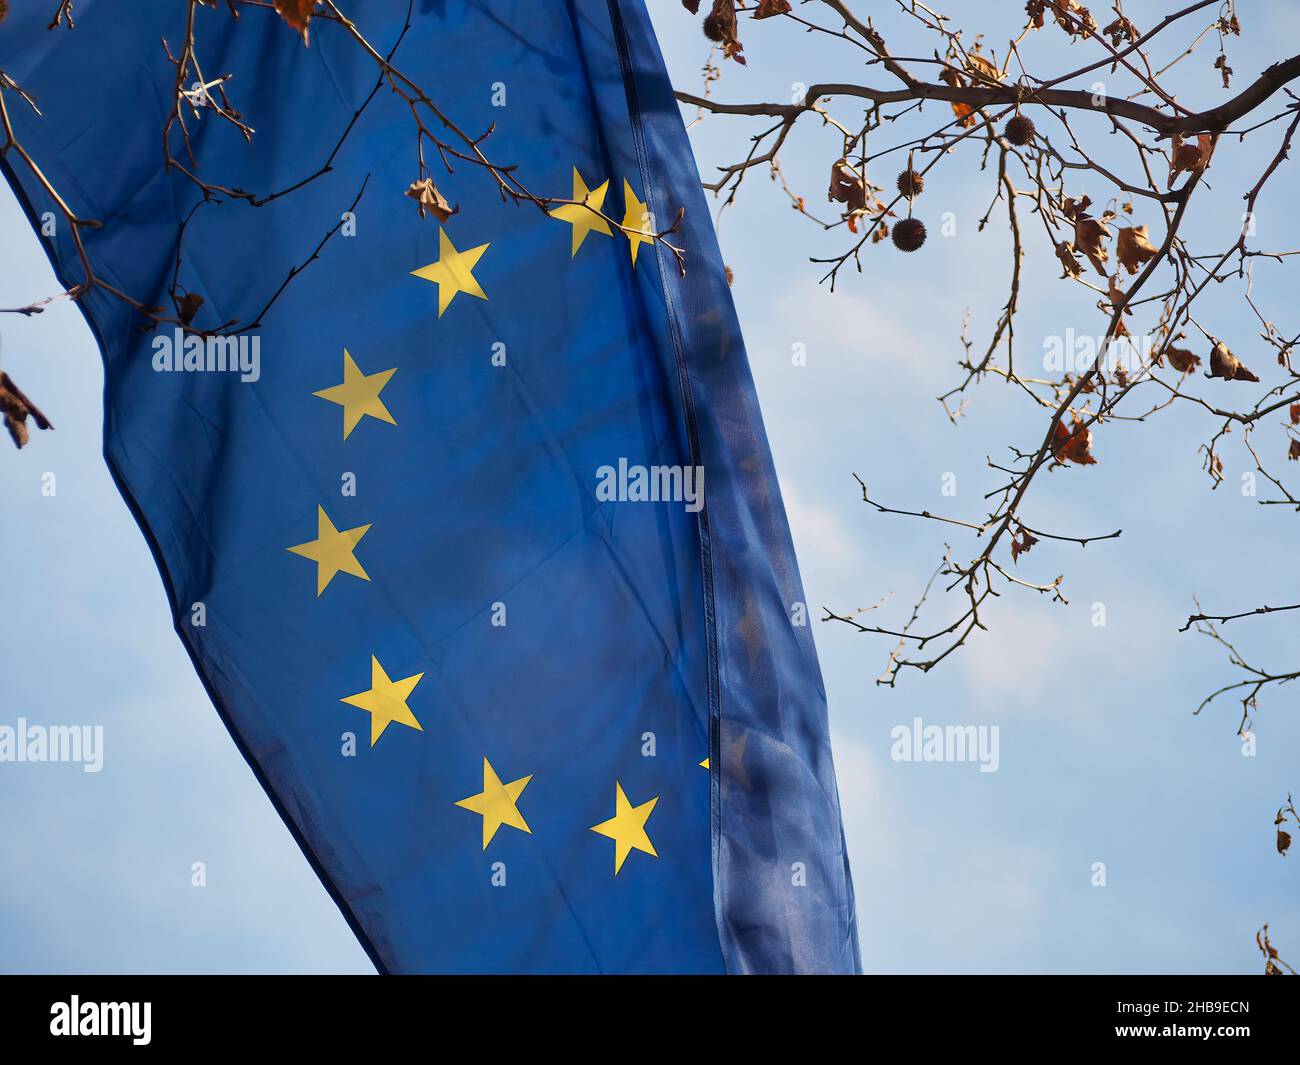 EU flag waving in the air Stock Photo